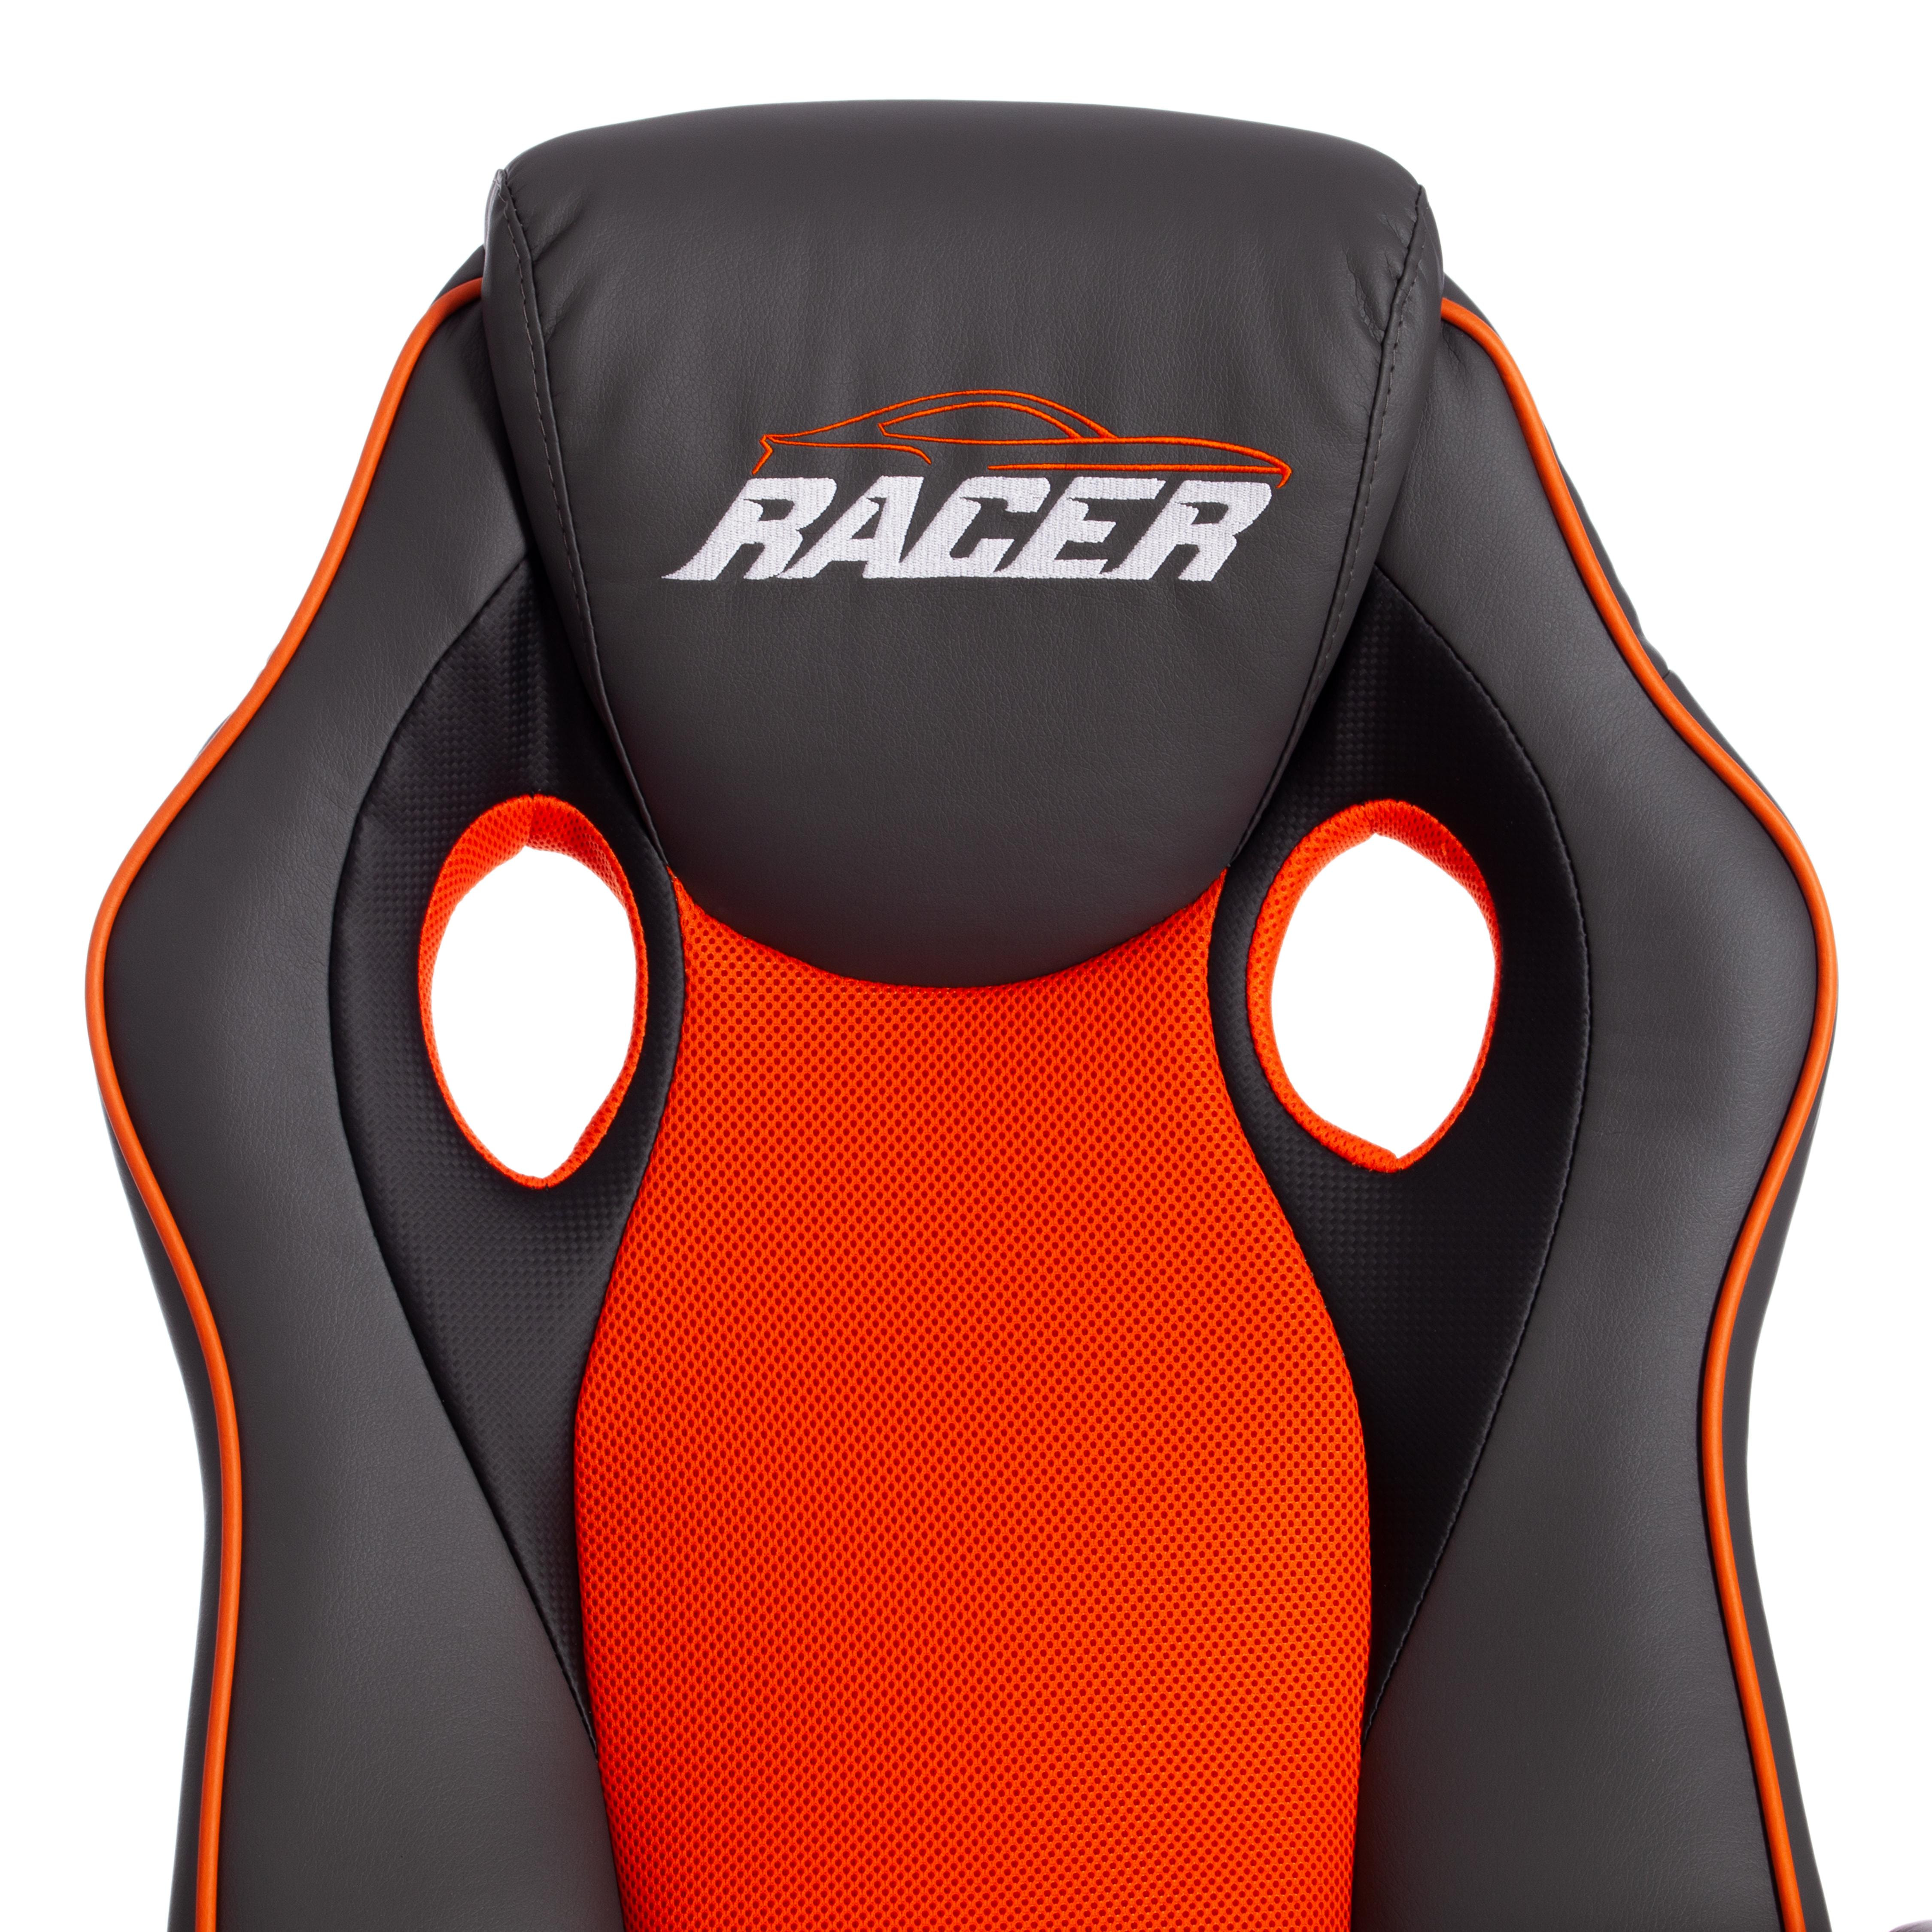 Кресло RACER GT new кож/зам/ткань, металлик/оранжевый, 36/07